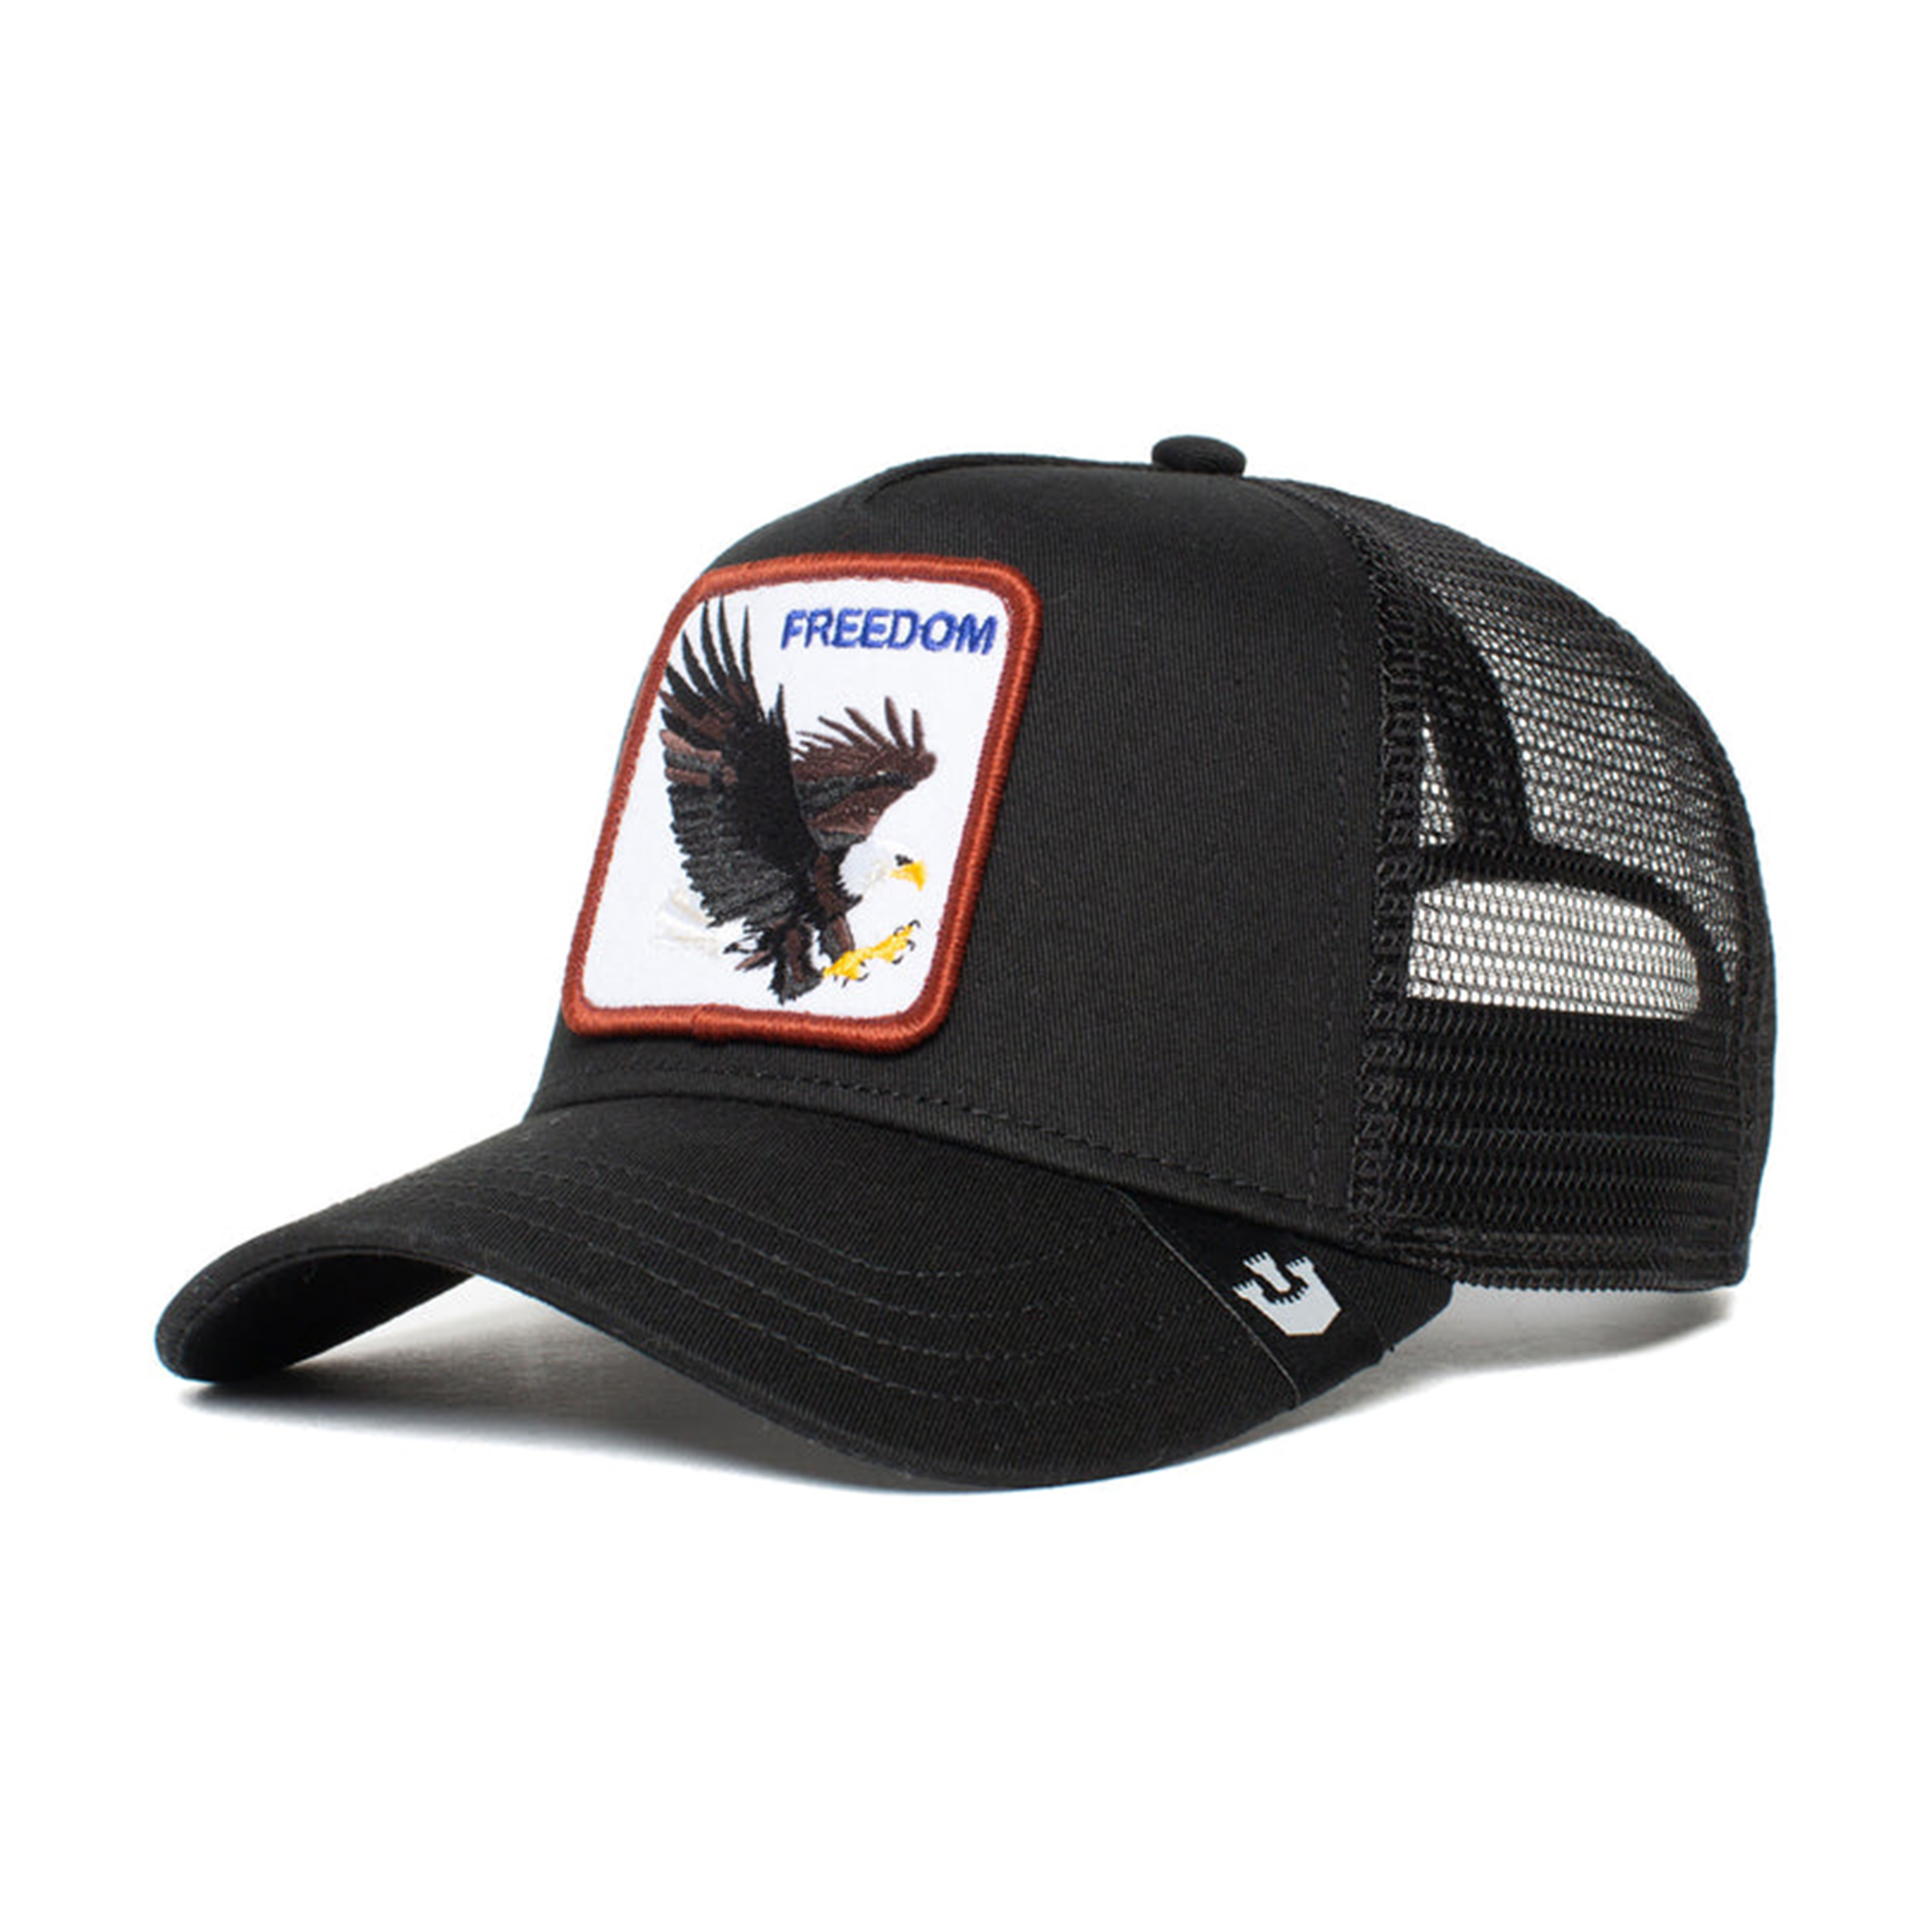 نکته خرید - قیمت روز کلاه کپ گورین براز مدل THE FREEDOM EAGLE 101-0384 خرید